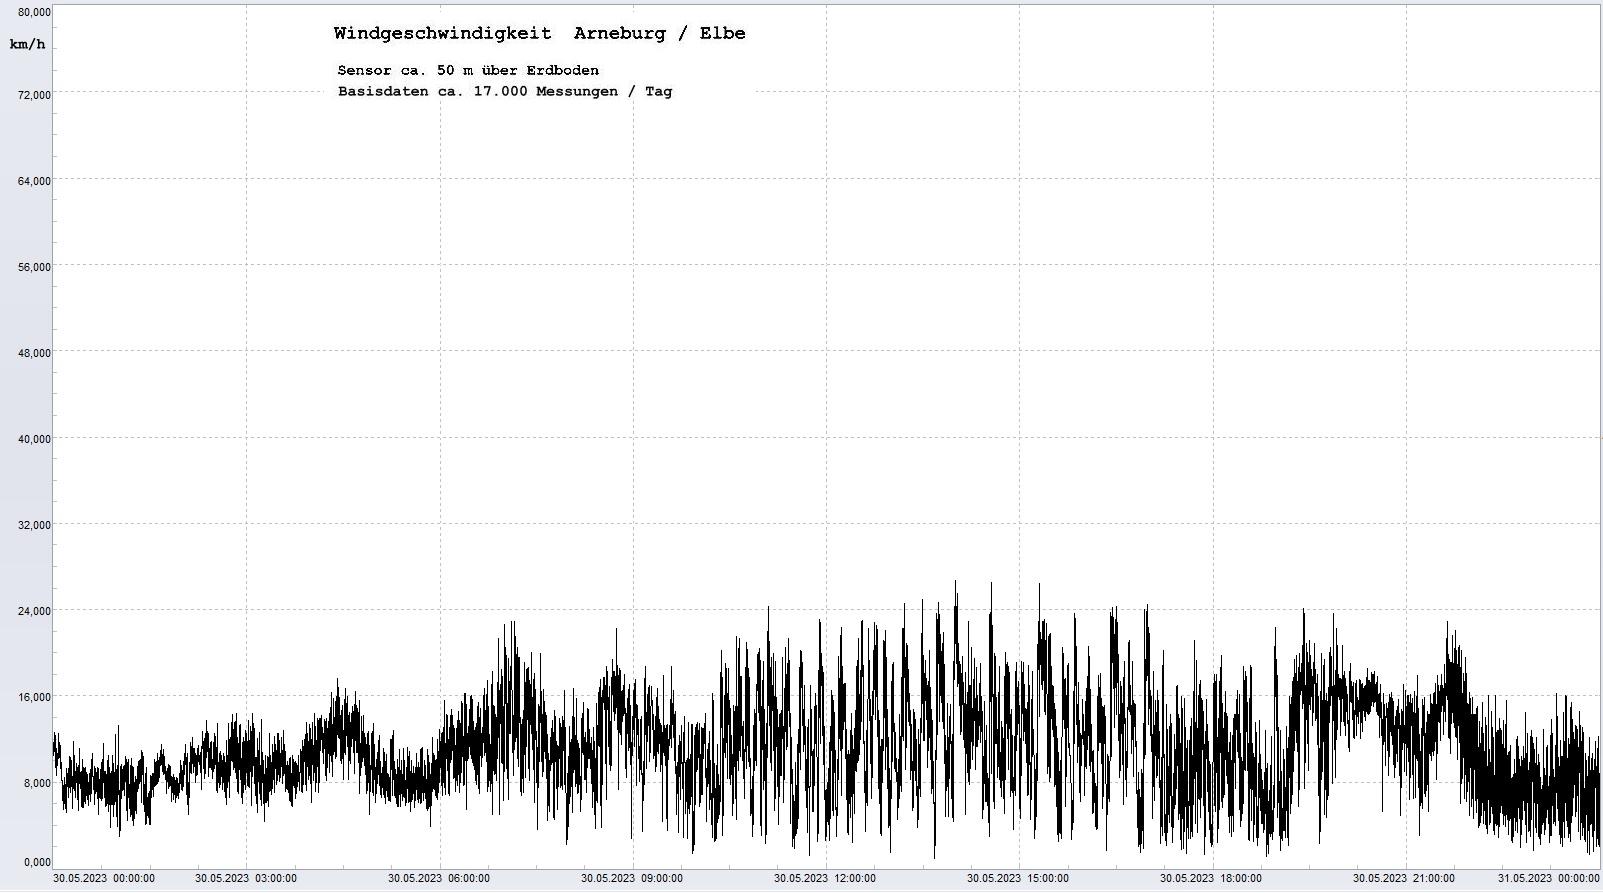 Arneburg Tages-Diagramm Winddaten, 30.05.2023
  Diagramm, Sensor auf Gebude, ca. 50 m ber Erdboden, Basis: 5s-Aufzeichnung